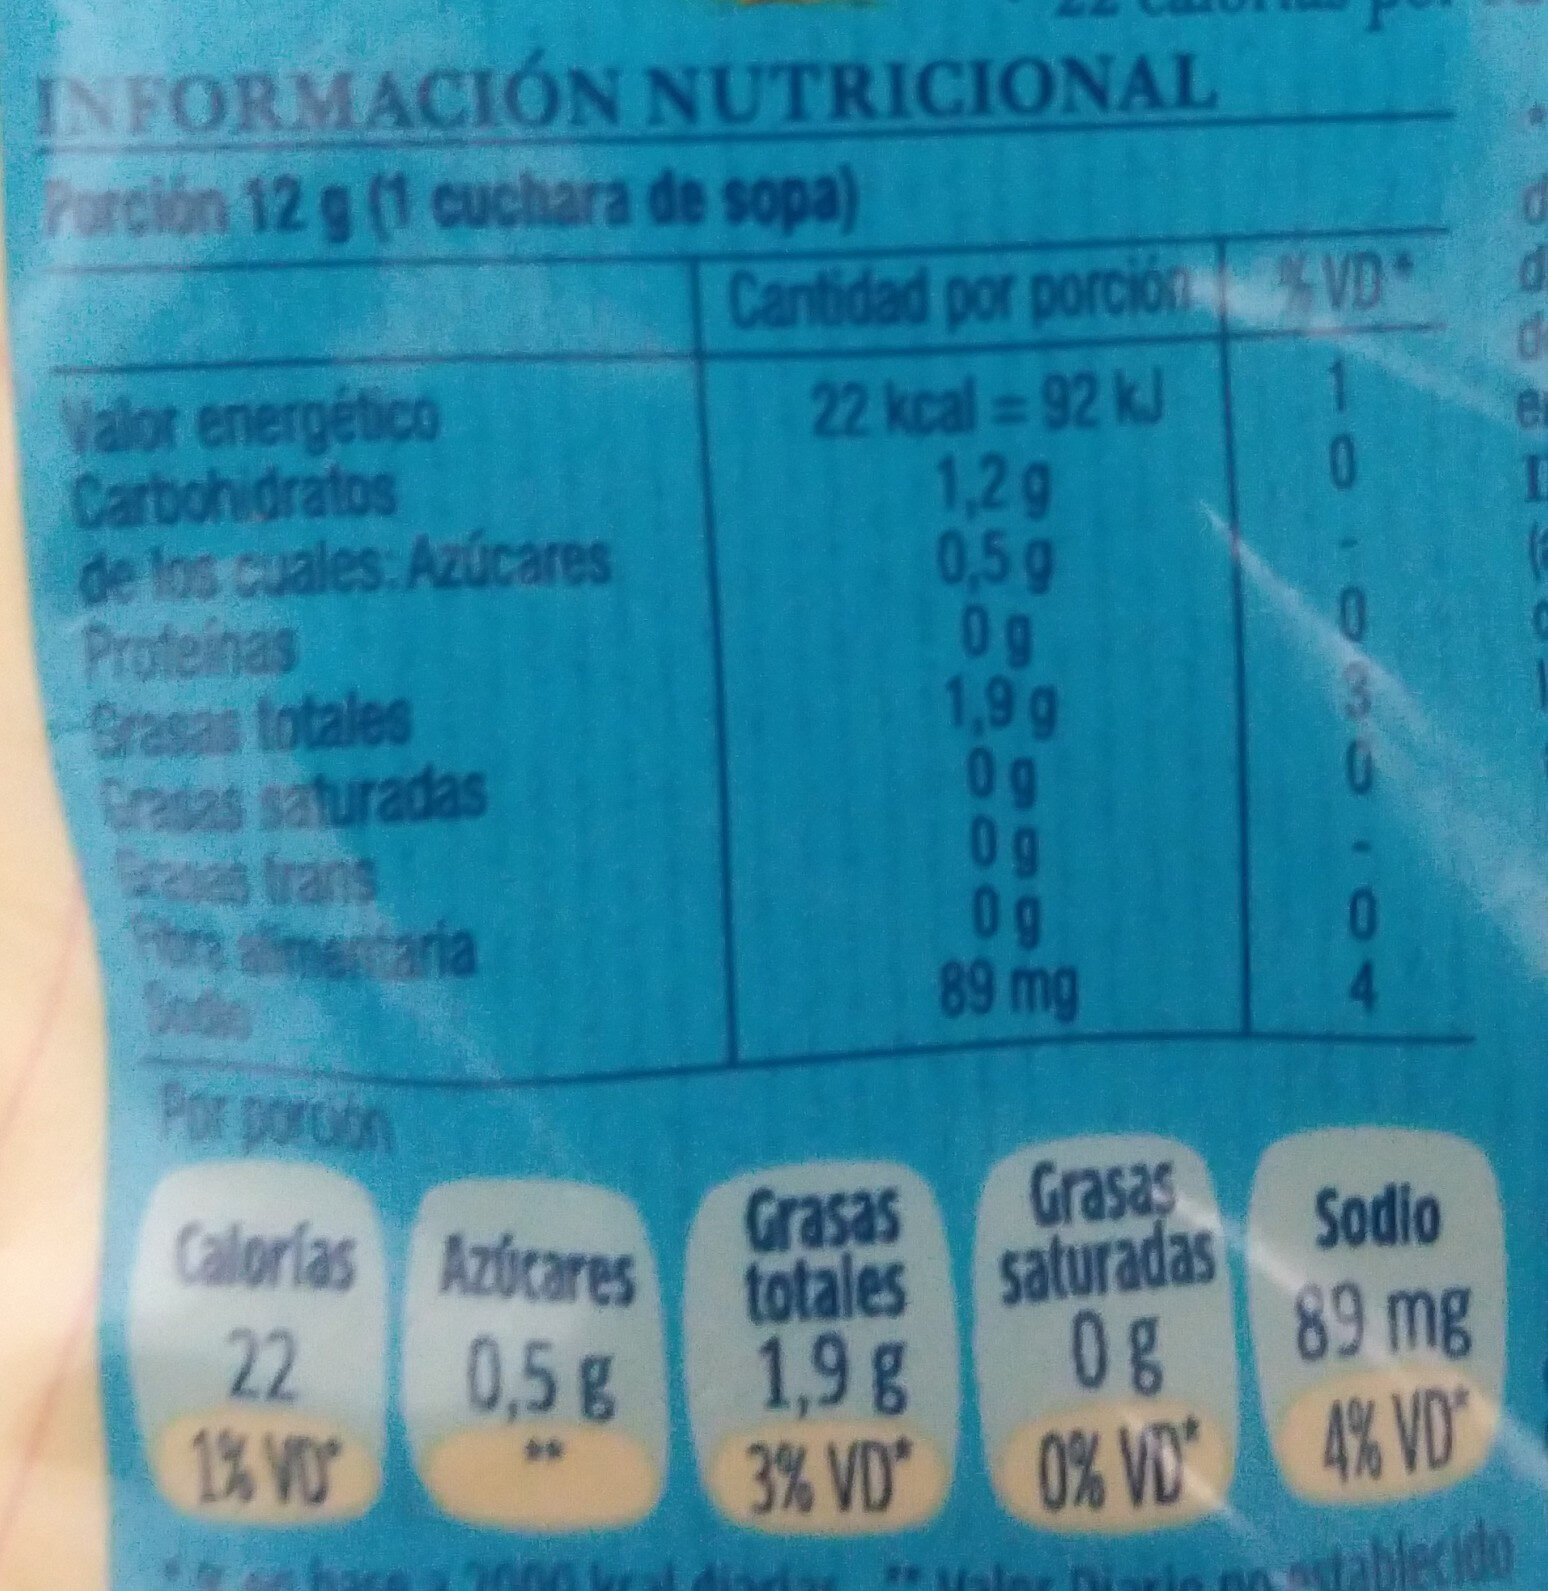 mayonesa hellmanns light - Nutrition facts - es